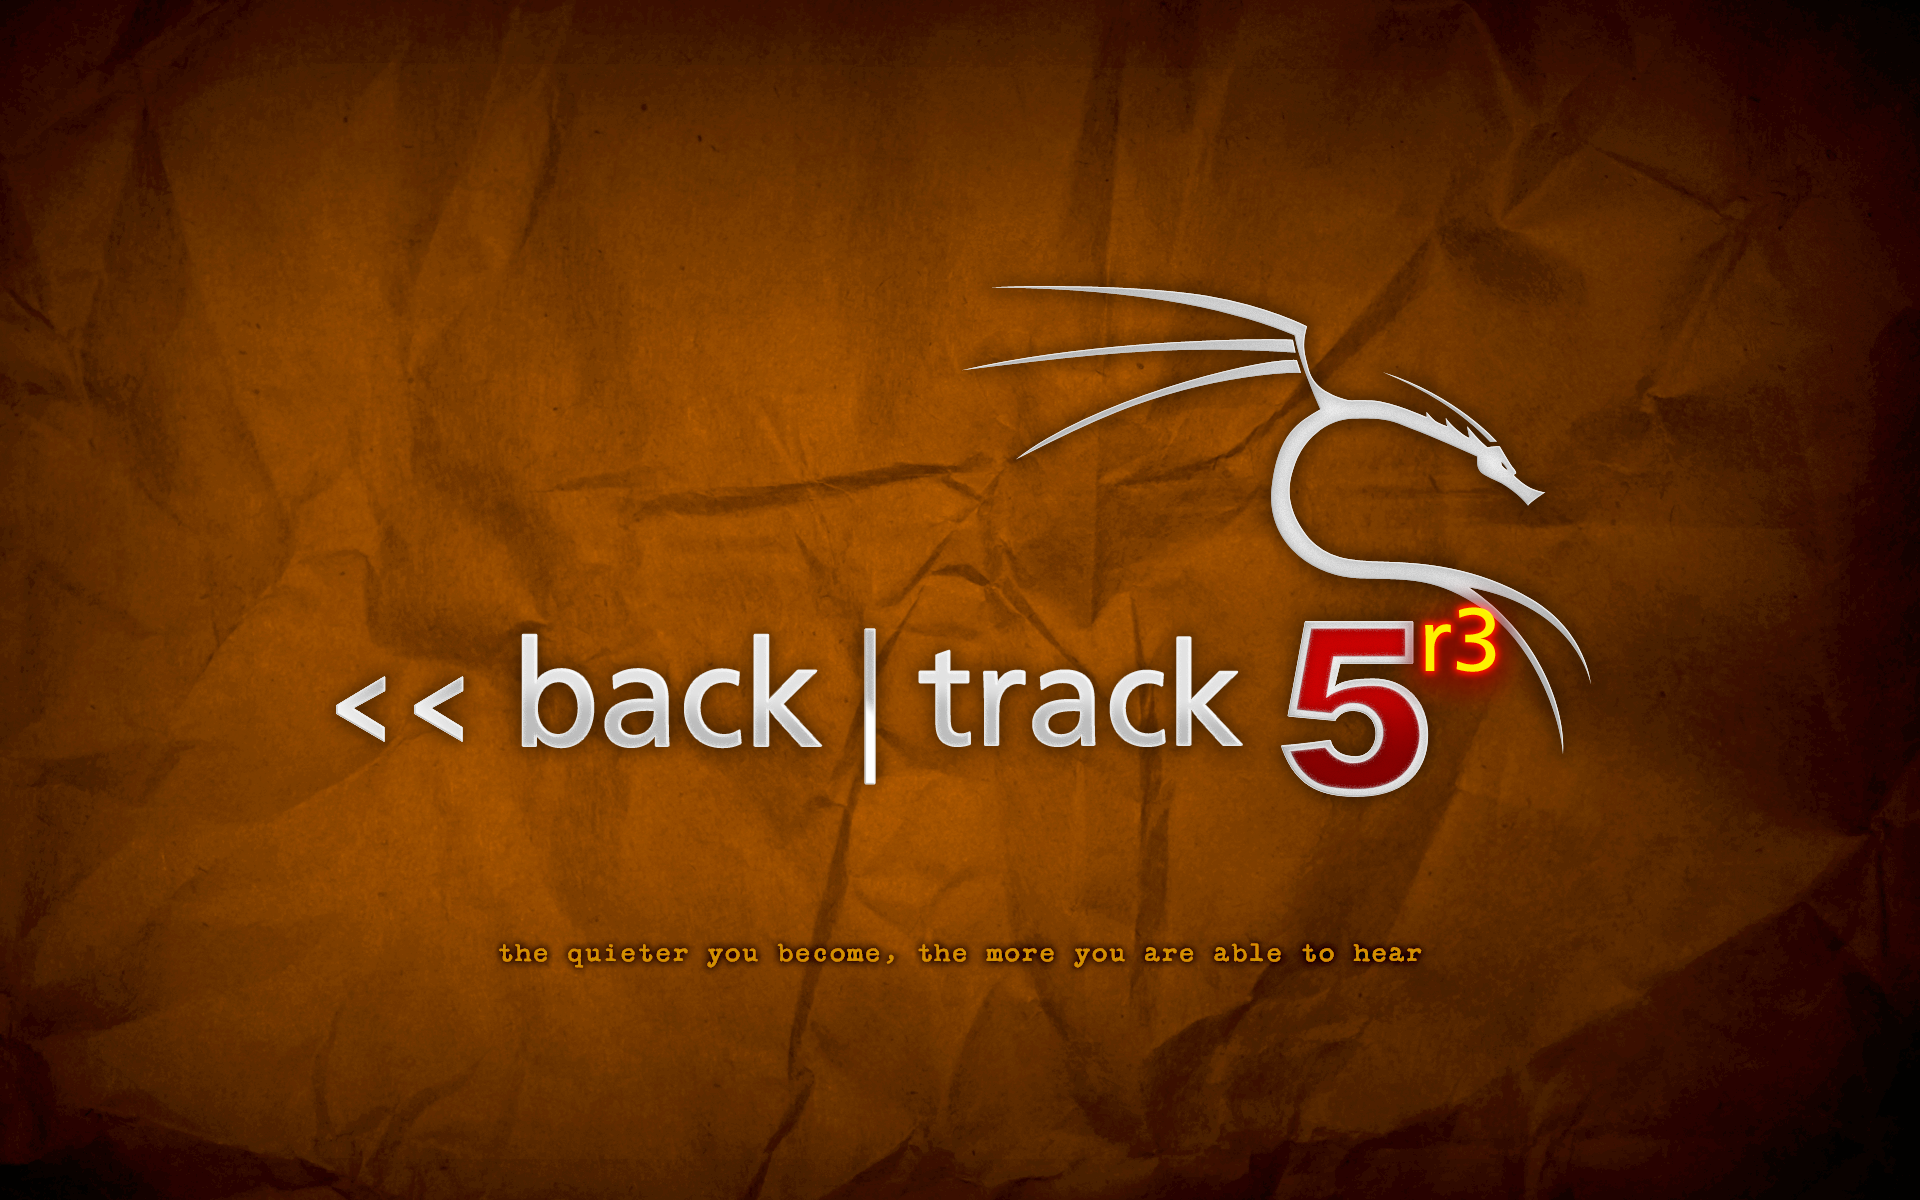 backtrack-5r3-orange.png